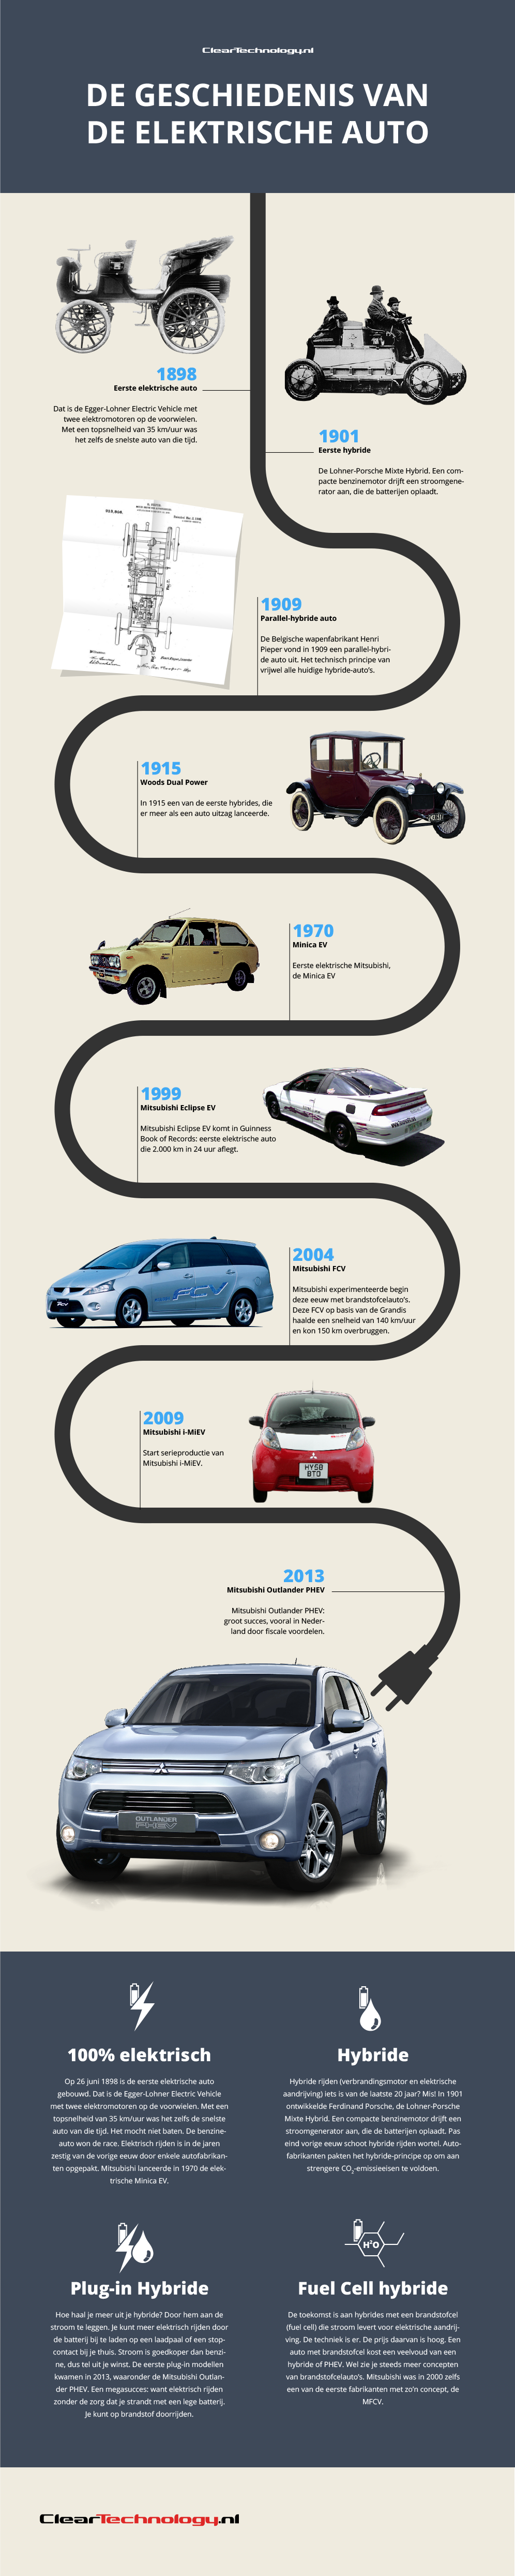 Geschiedenis elektrische auto